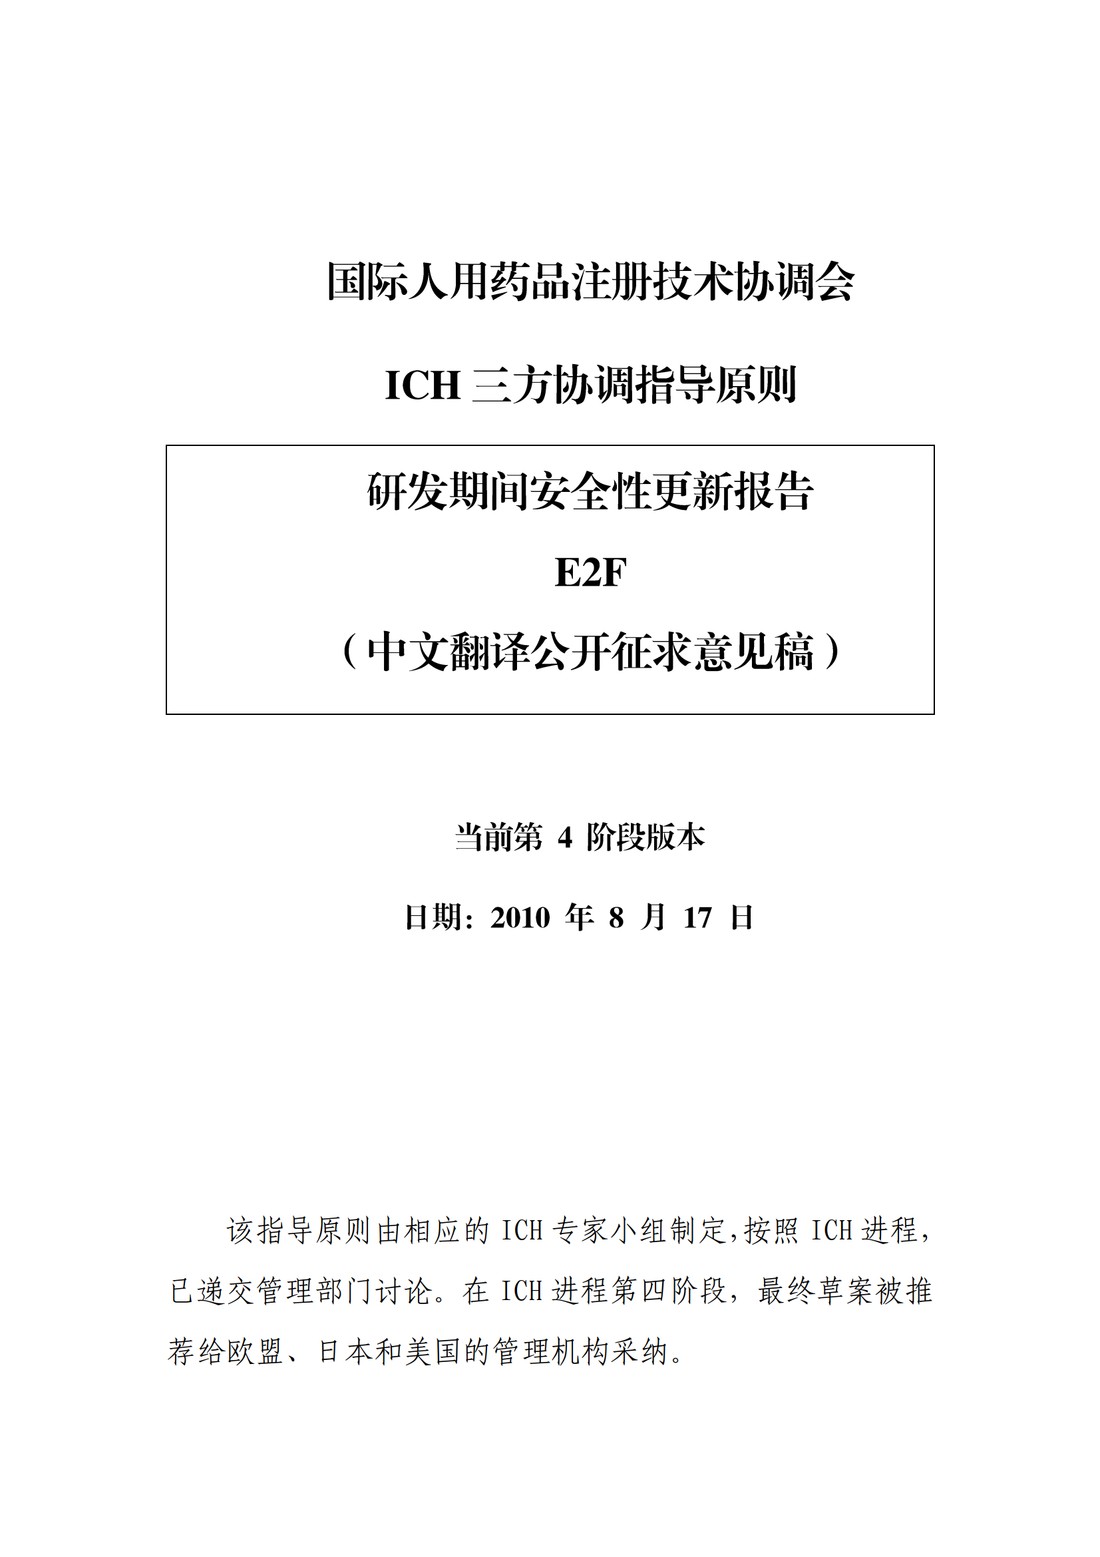 E2F 研发期间安全性更新报告(中文翻译公开征求意见稿)_01.jpg